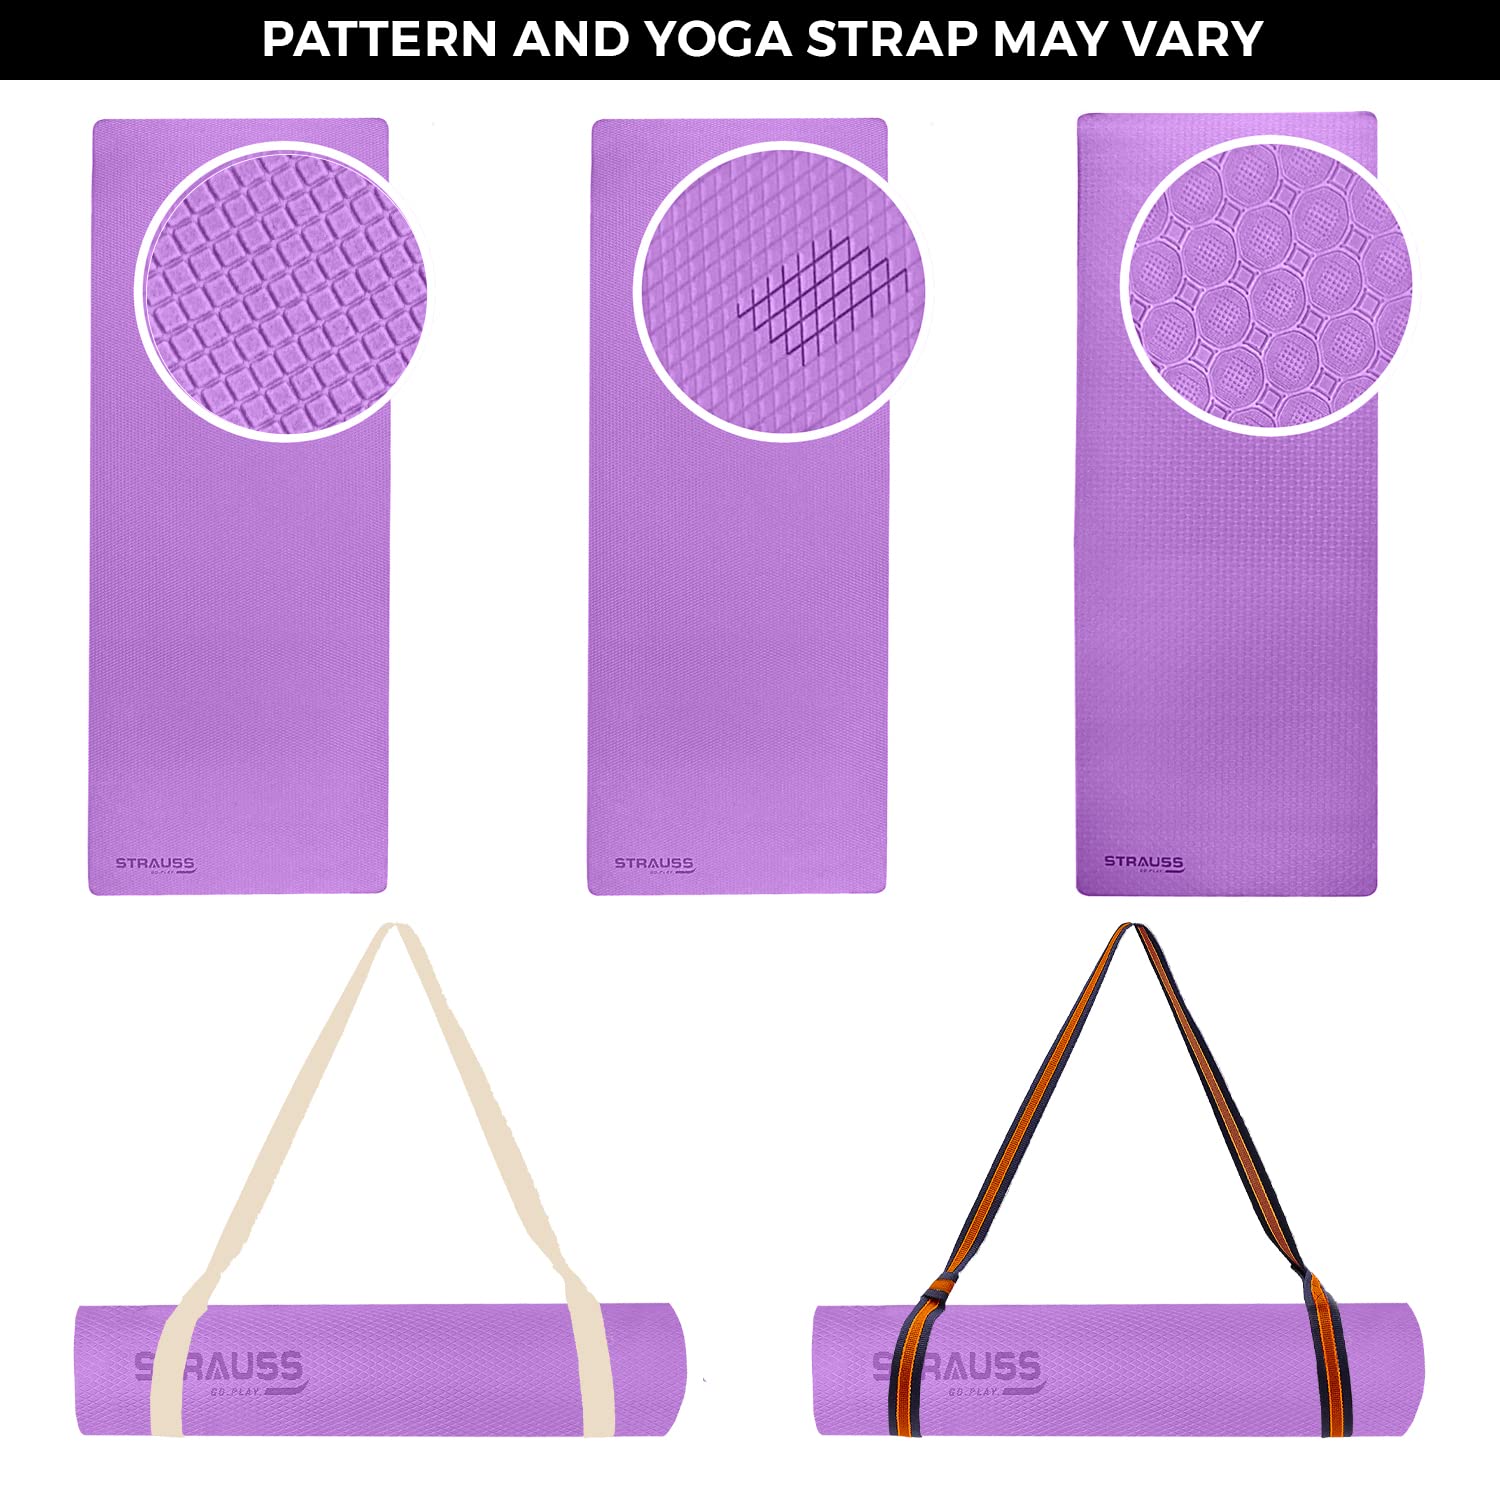 NATURES PLUS Yoga Mat 6 Mm - Purple, EVA Material, 1 pc